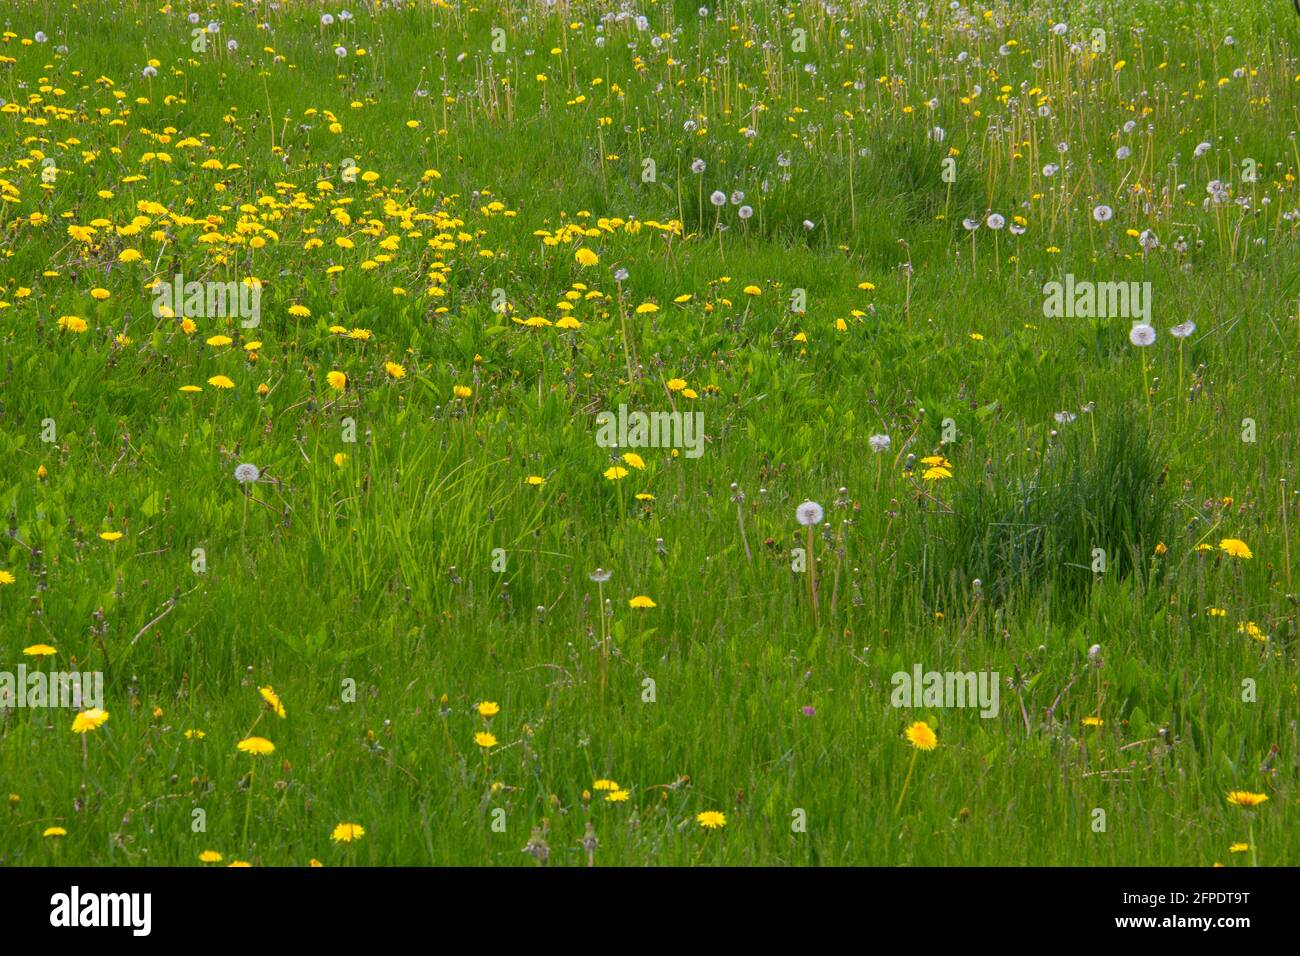 Dandelions in an unkempt lawn Stock Photo